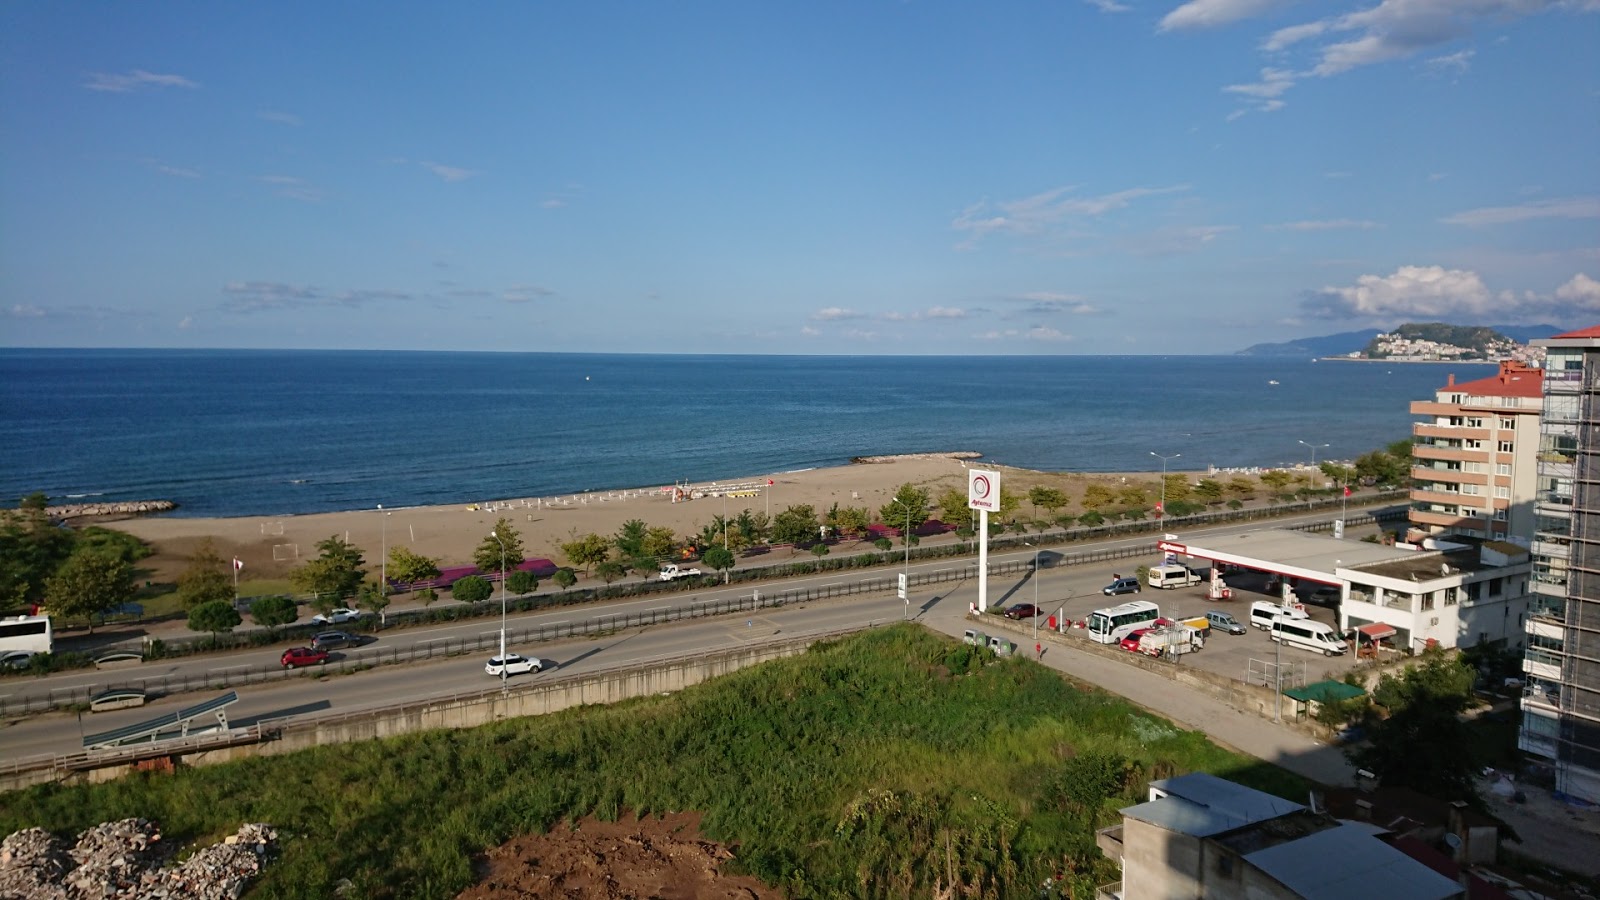 Municipal Beach'in fotoğrafı - rahatlamayı sevenler arasında popüler bir yer